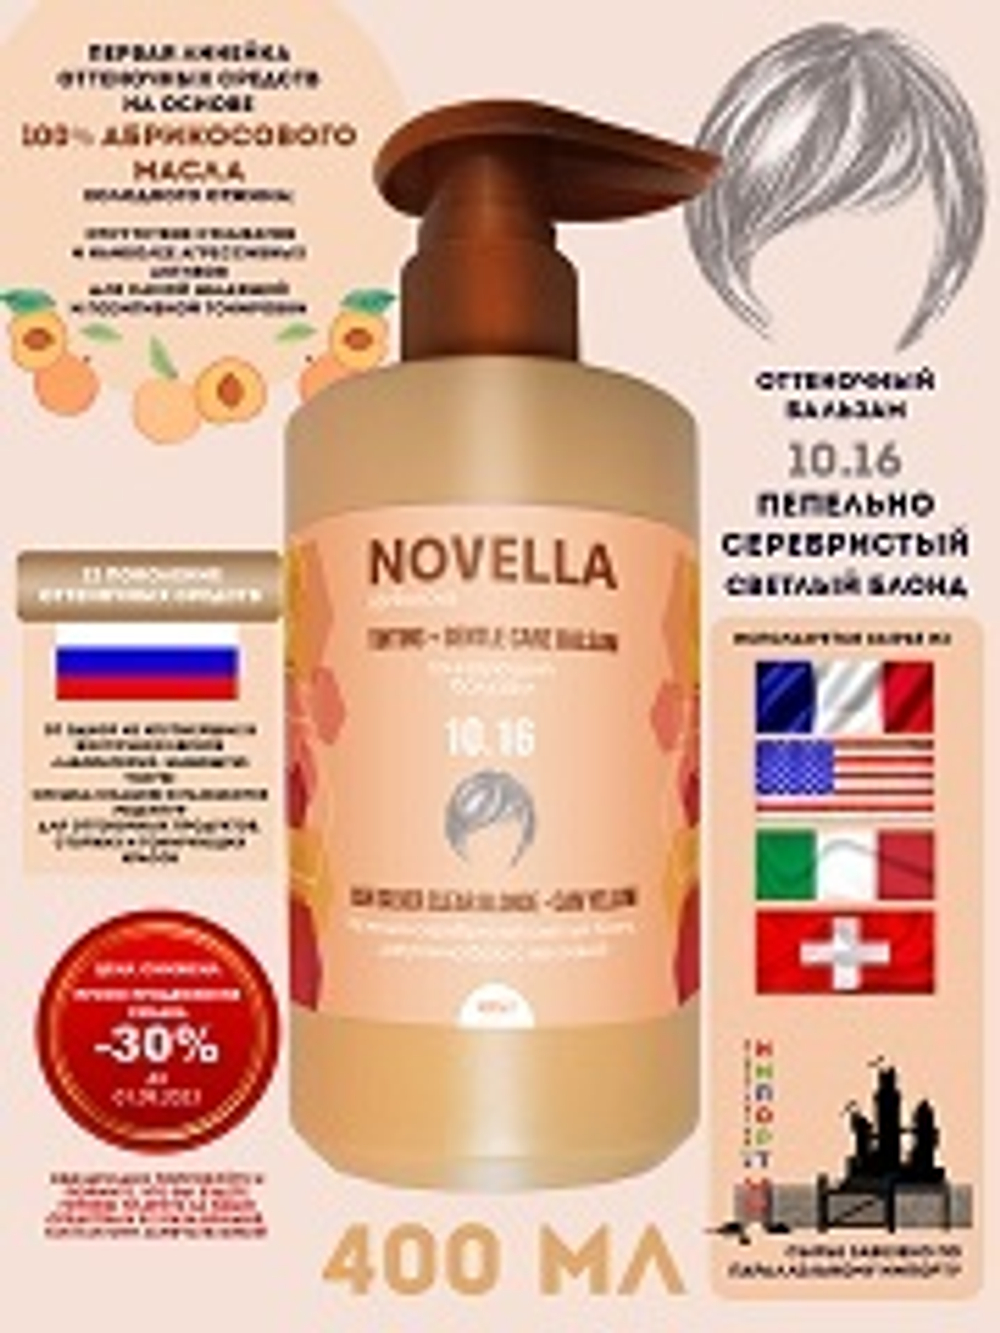 Novella Abrikosova Бальзам для волос, оттеночный, Пепельно-серебристый светлый блонд, 10.16, 400мл